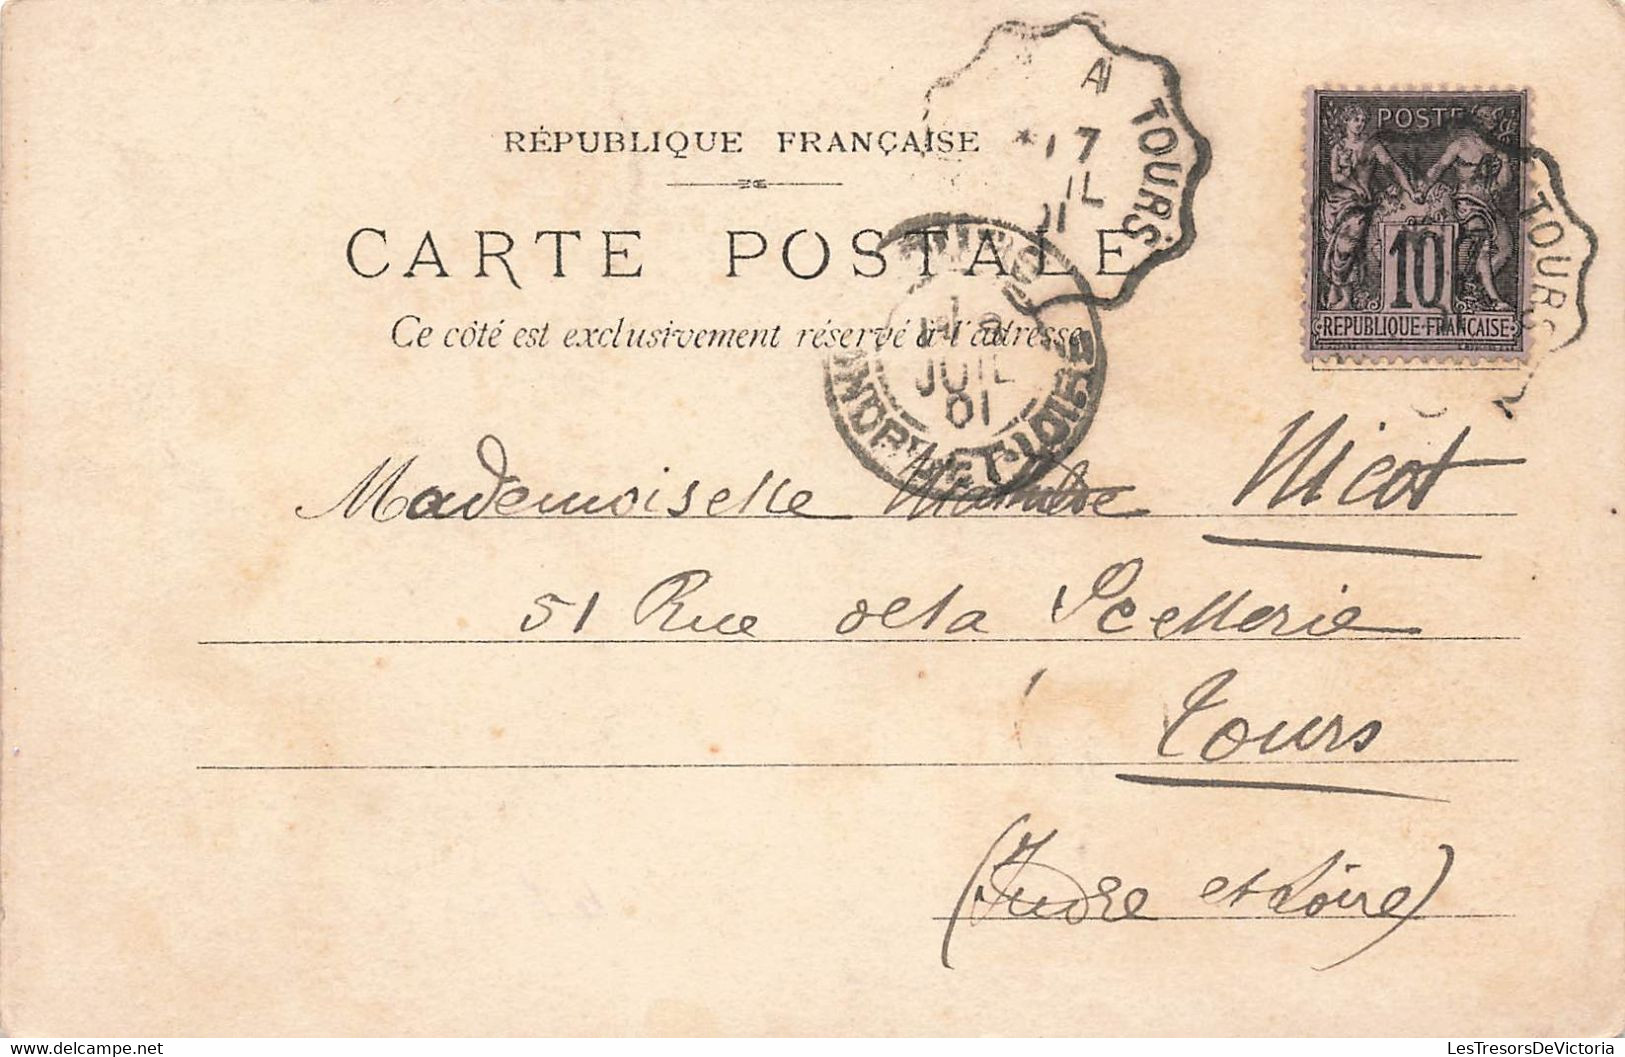 Chemins De Fer D'orleans - Rocamadour Et Monvalent - Carte Précurseur Obliteration Ambulant Tours - 1901 - - Rocamadour